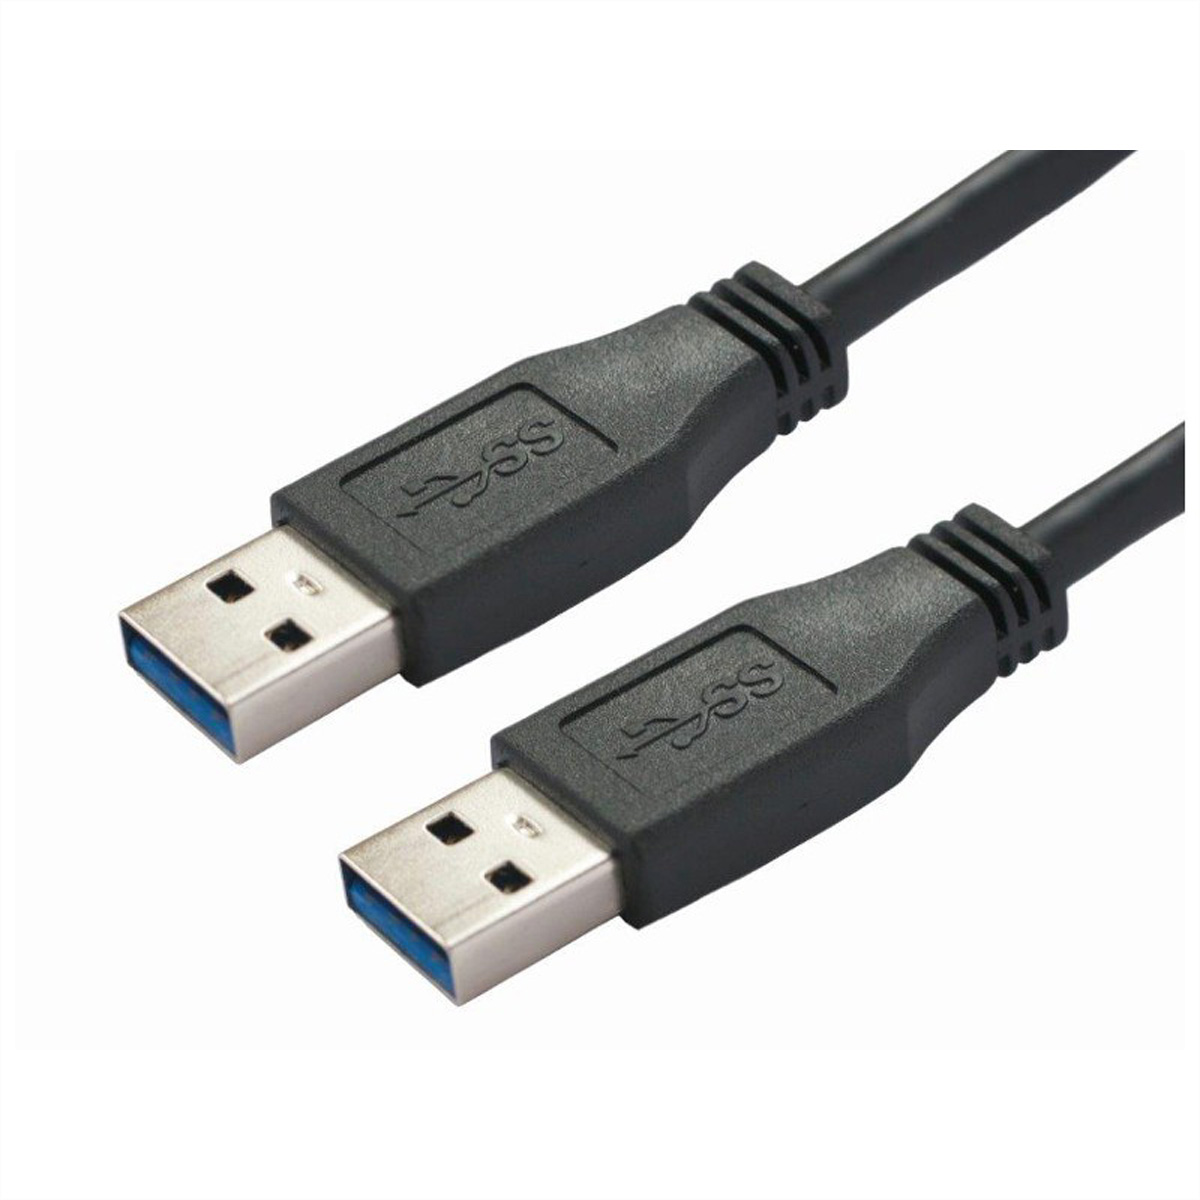 BACHMANN USB 3.0 Kabel A/A 1:1, schwarz, 2 m